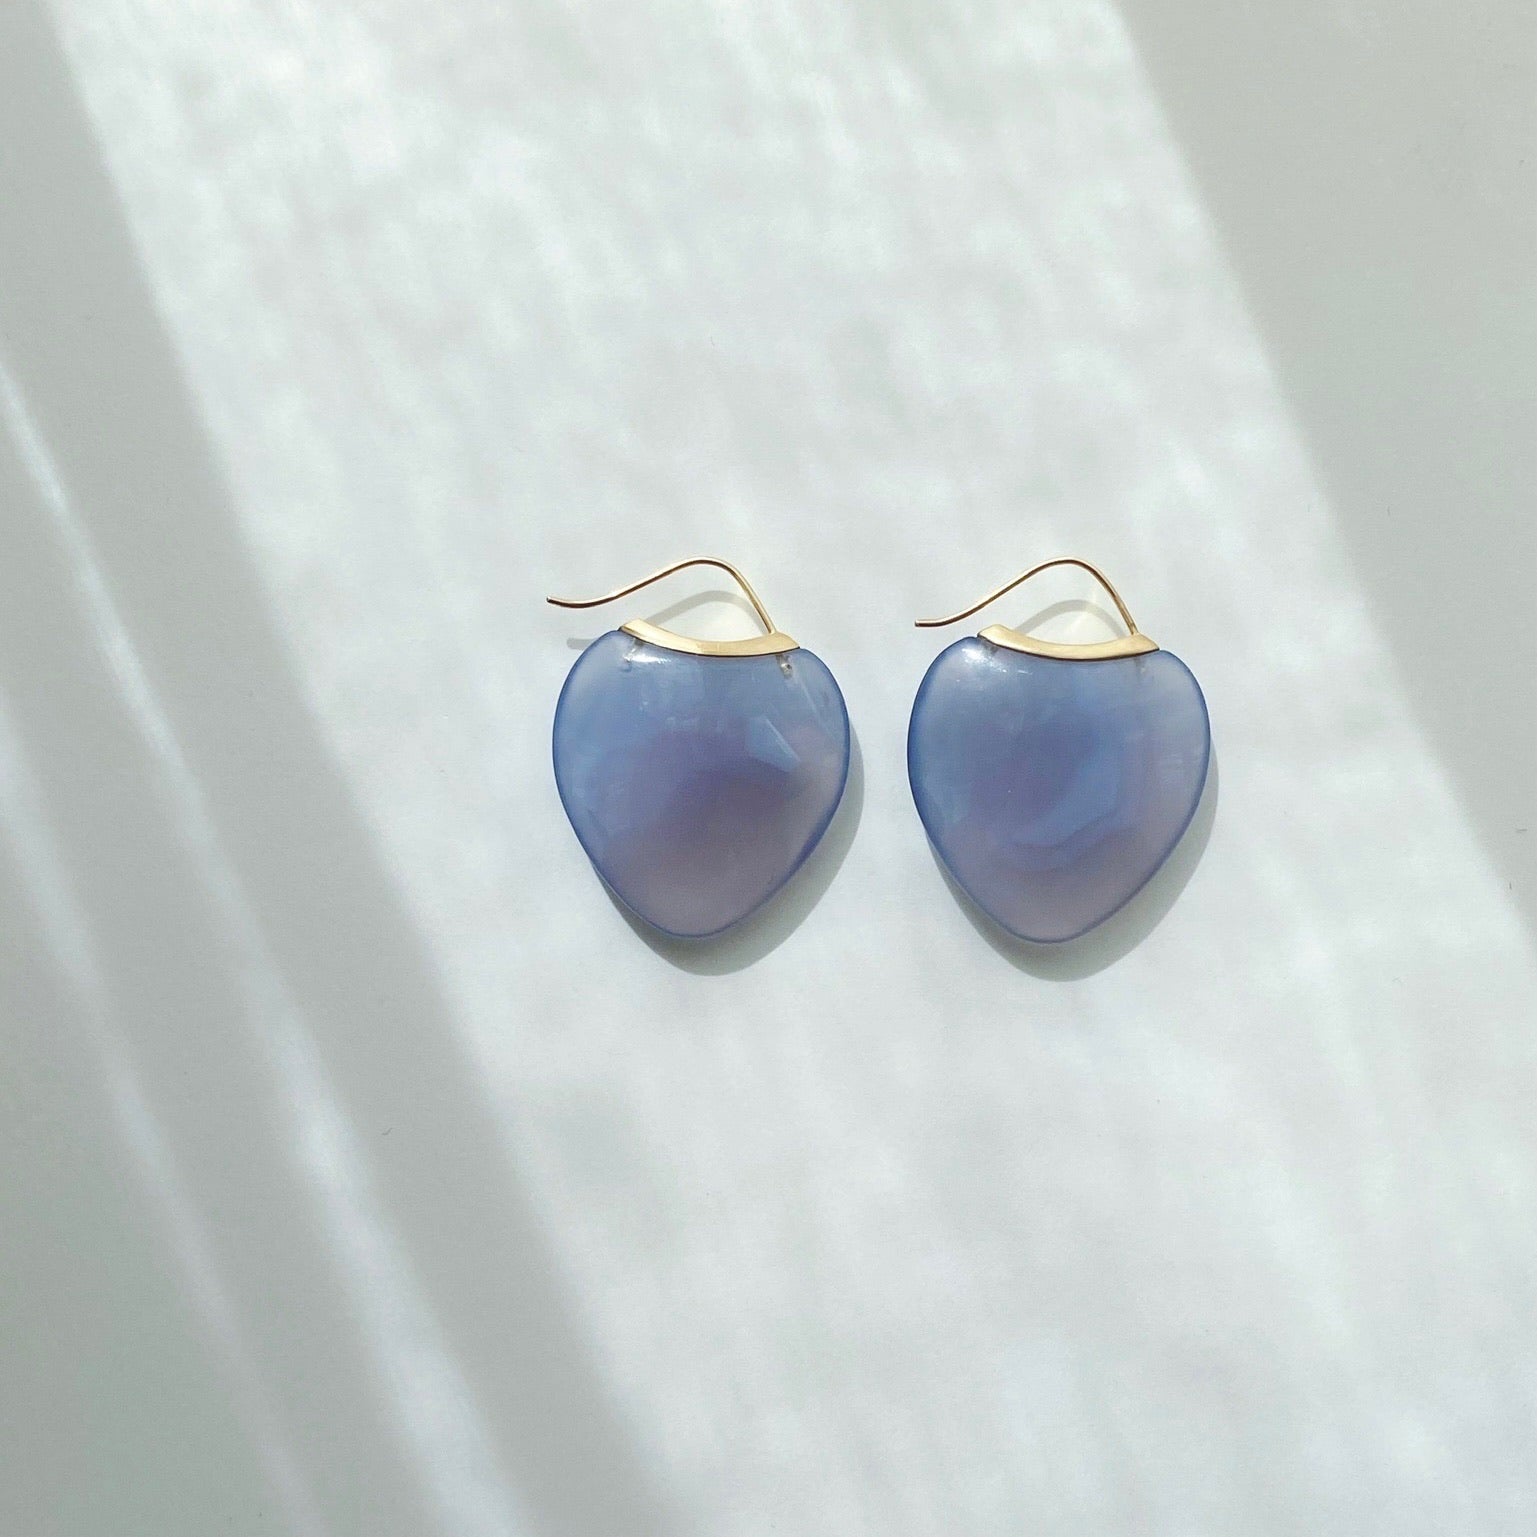 Papal Earrings : Blue Chalcedony + 18k